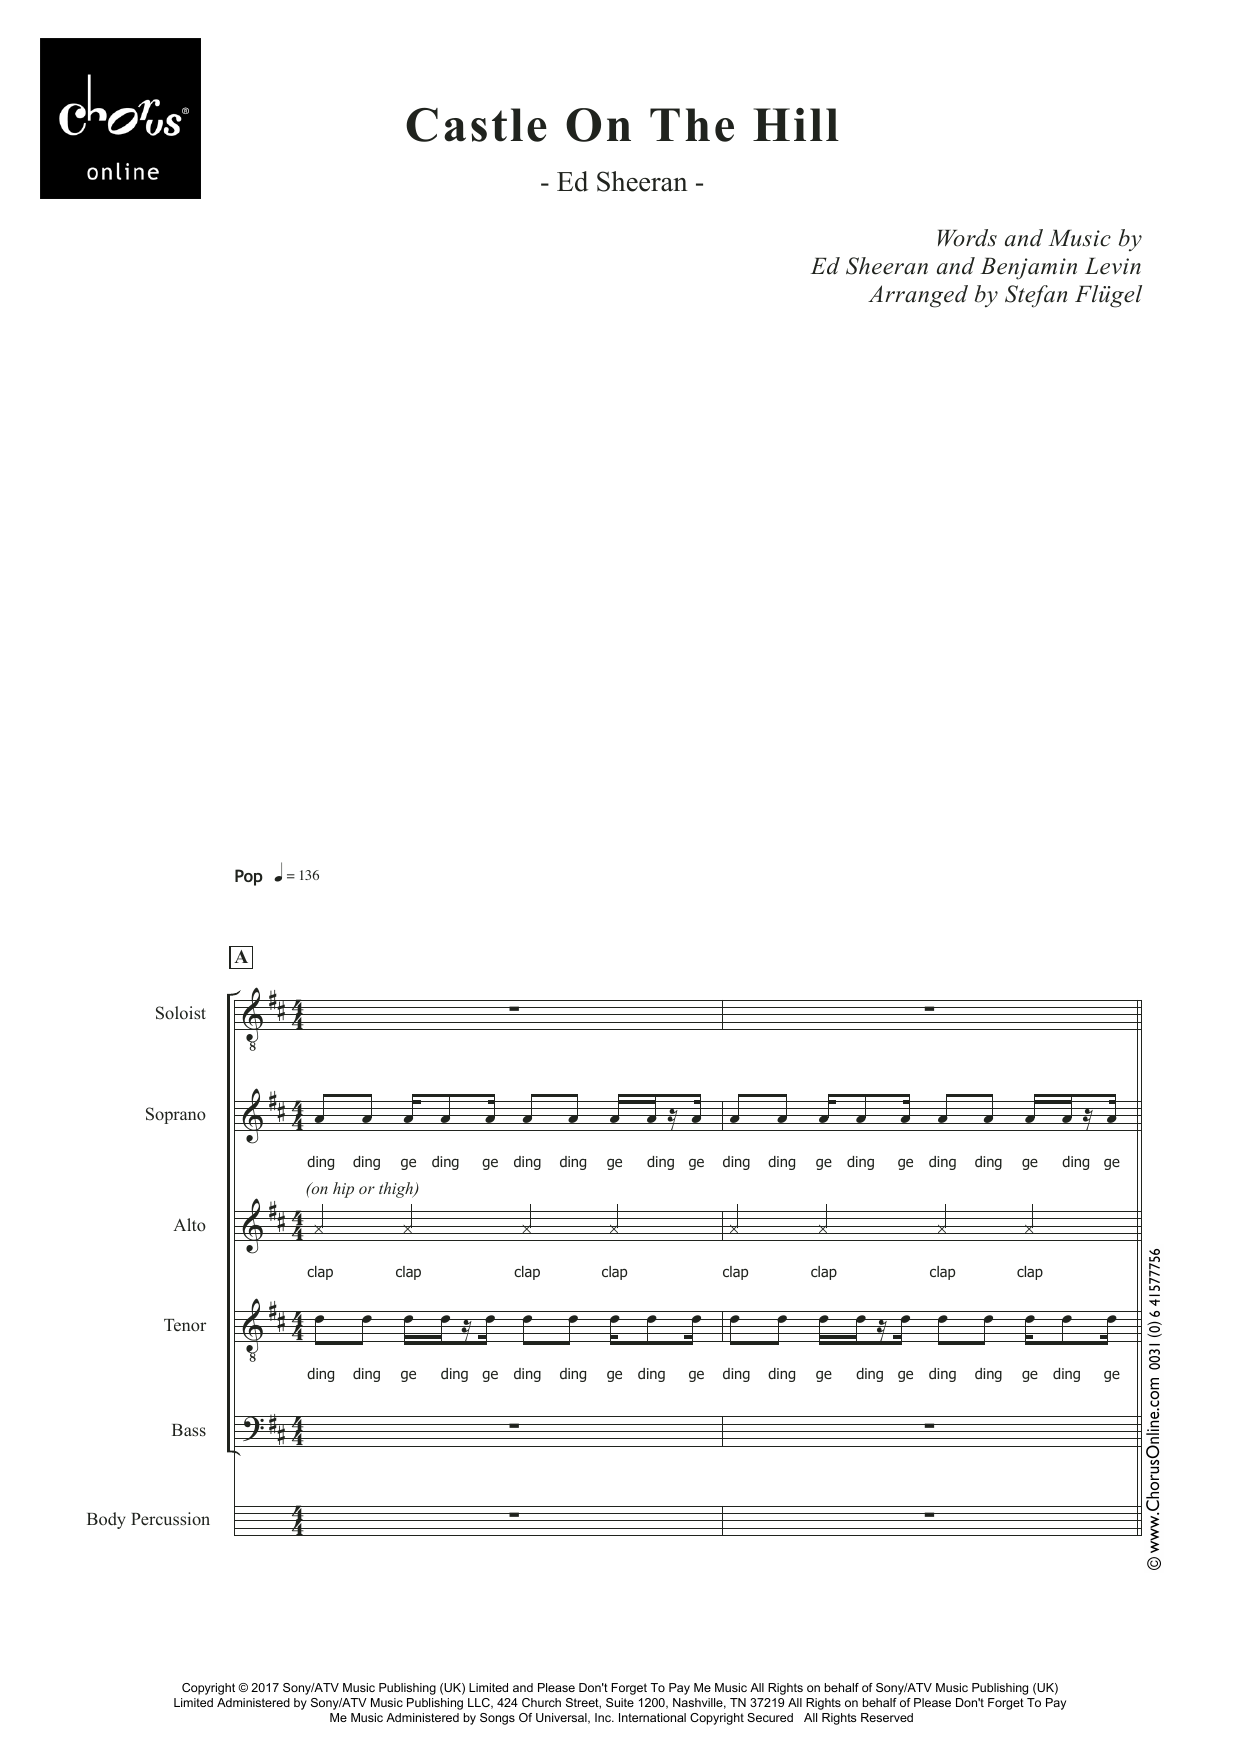 Ed Sheeran Castle On the Hill (arr. Stefan Flügel) sheet music notes printable PDF score